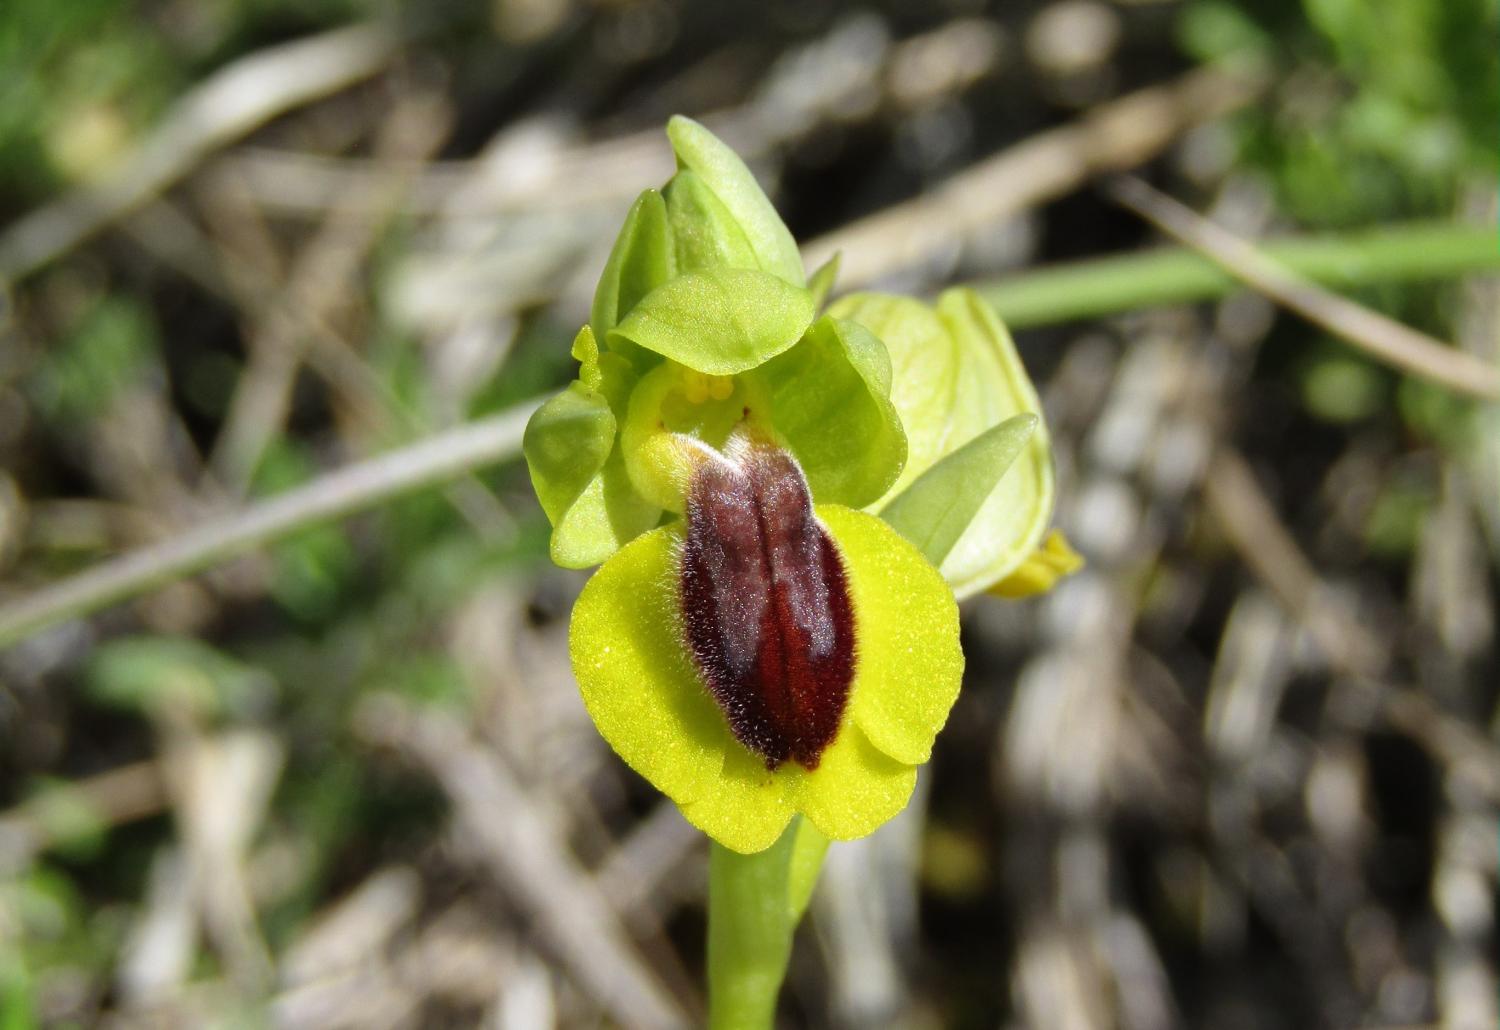 Ophrys lutea_1.JPG